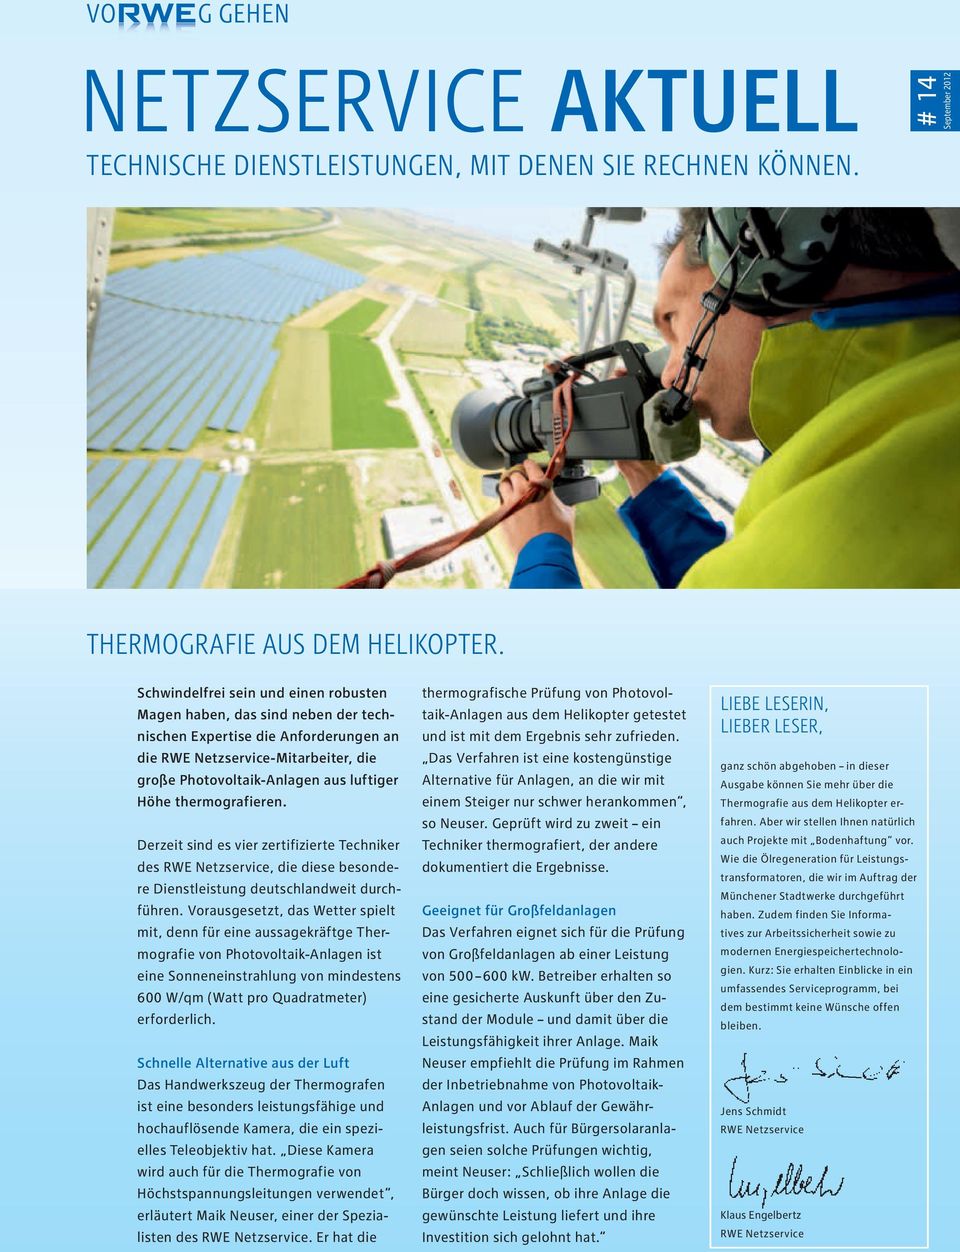 thermografieren. Derzeit sind es vier zertifizierte Techniker des RWE Netzservice, die diese besondere Dienstleistung deutschlandweit durchführen.